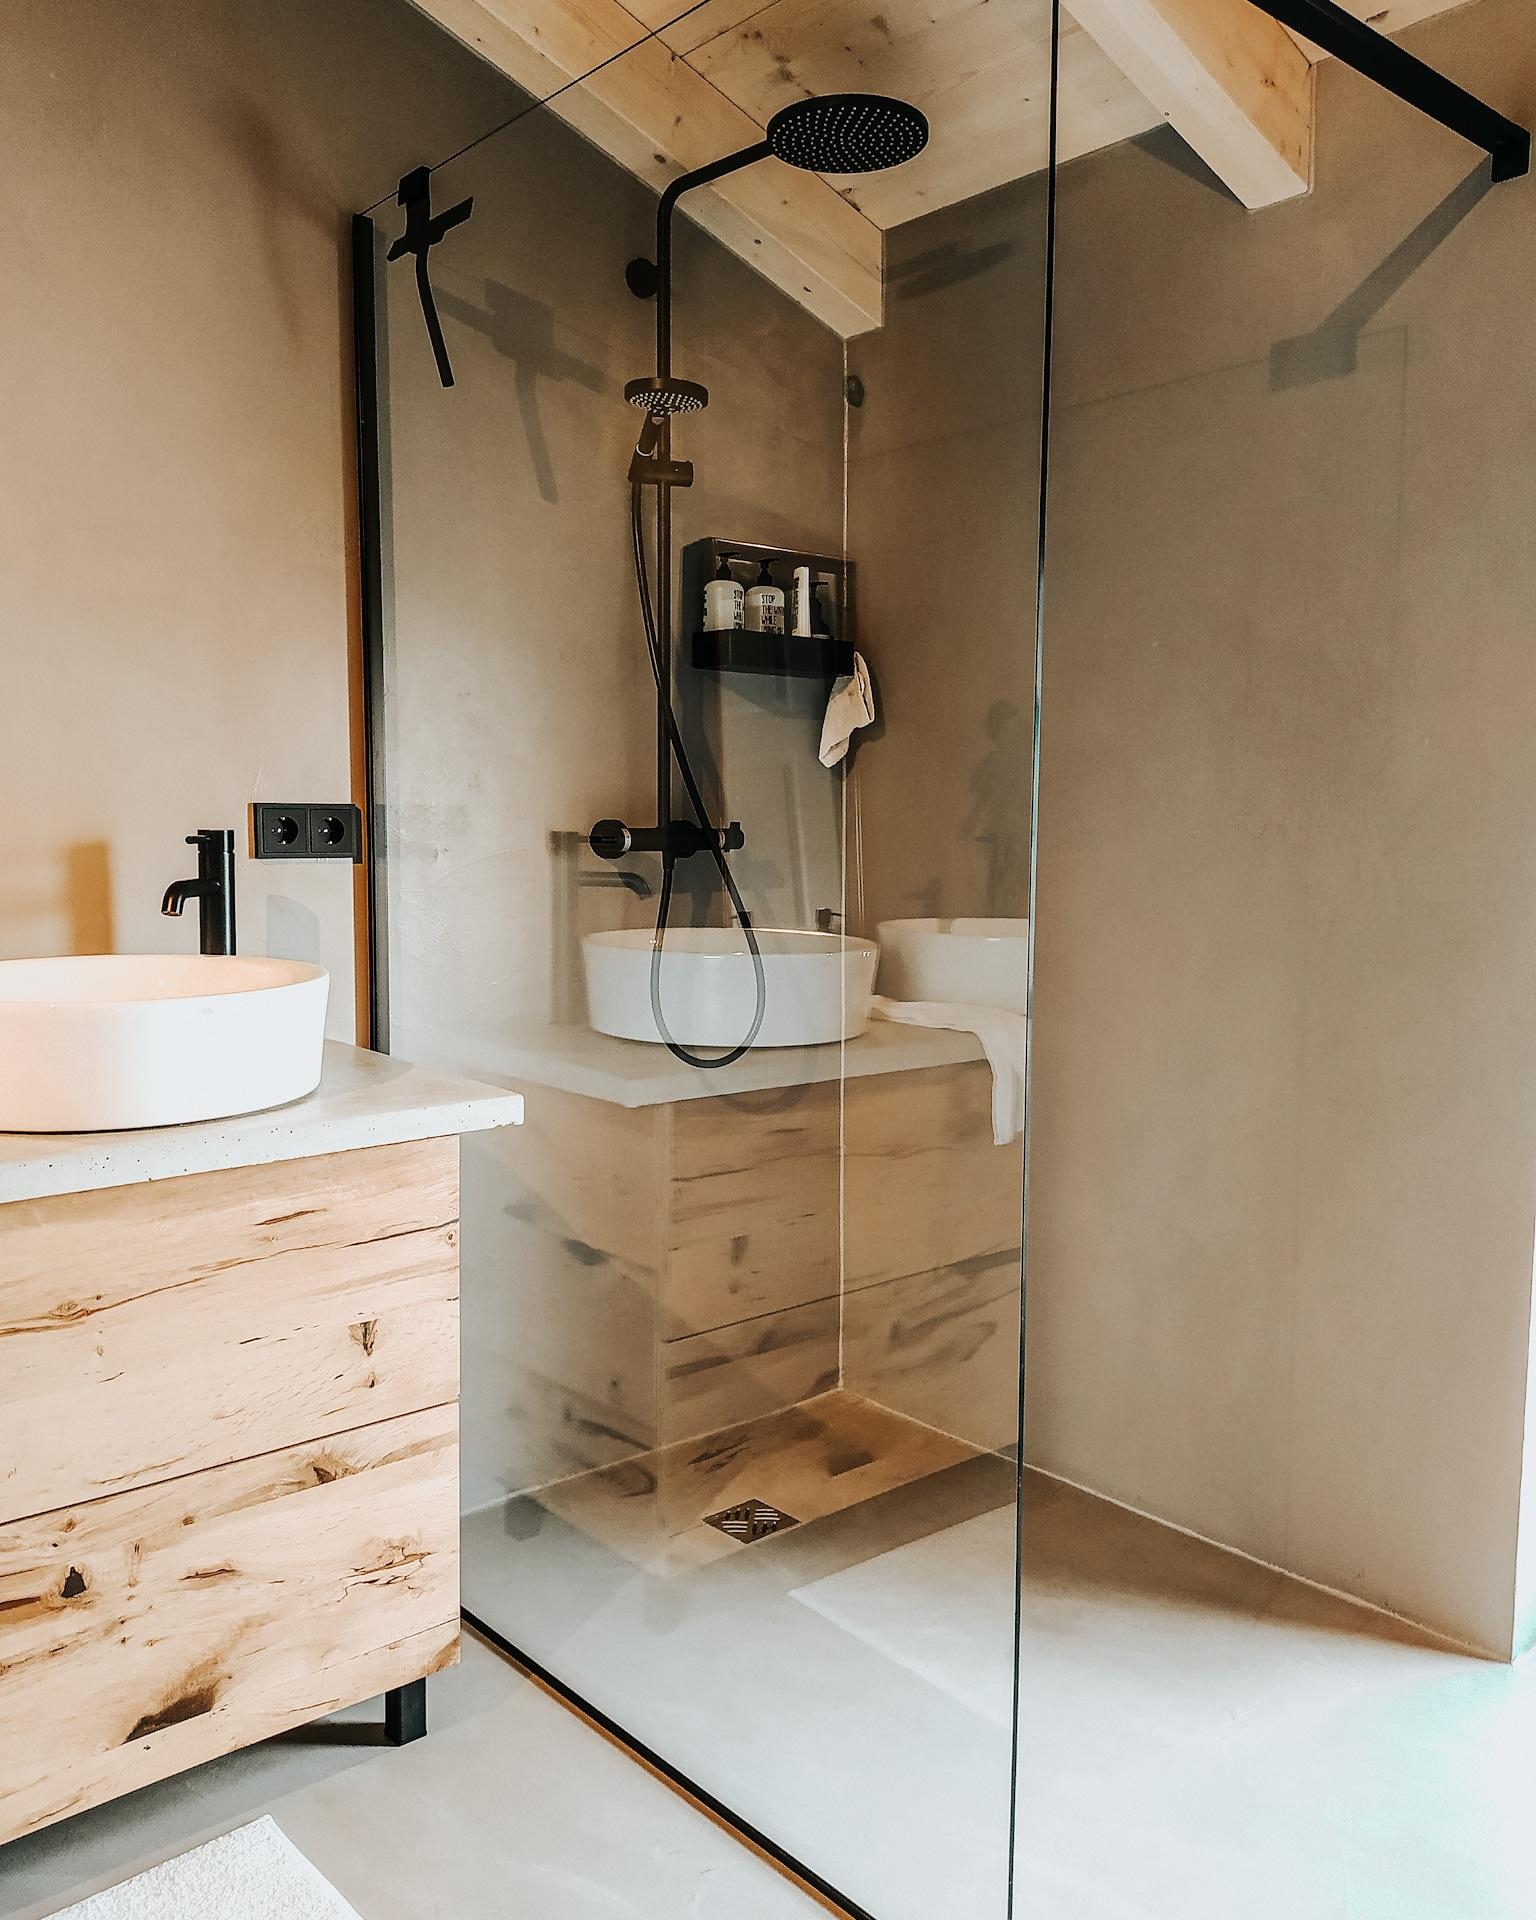 Badezimmer. Schlicht gehalten mit Beton und Holz, und Stahl. 
#industrialstyle
#industrialbathroom
#concretefloor